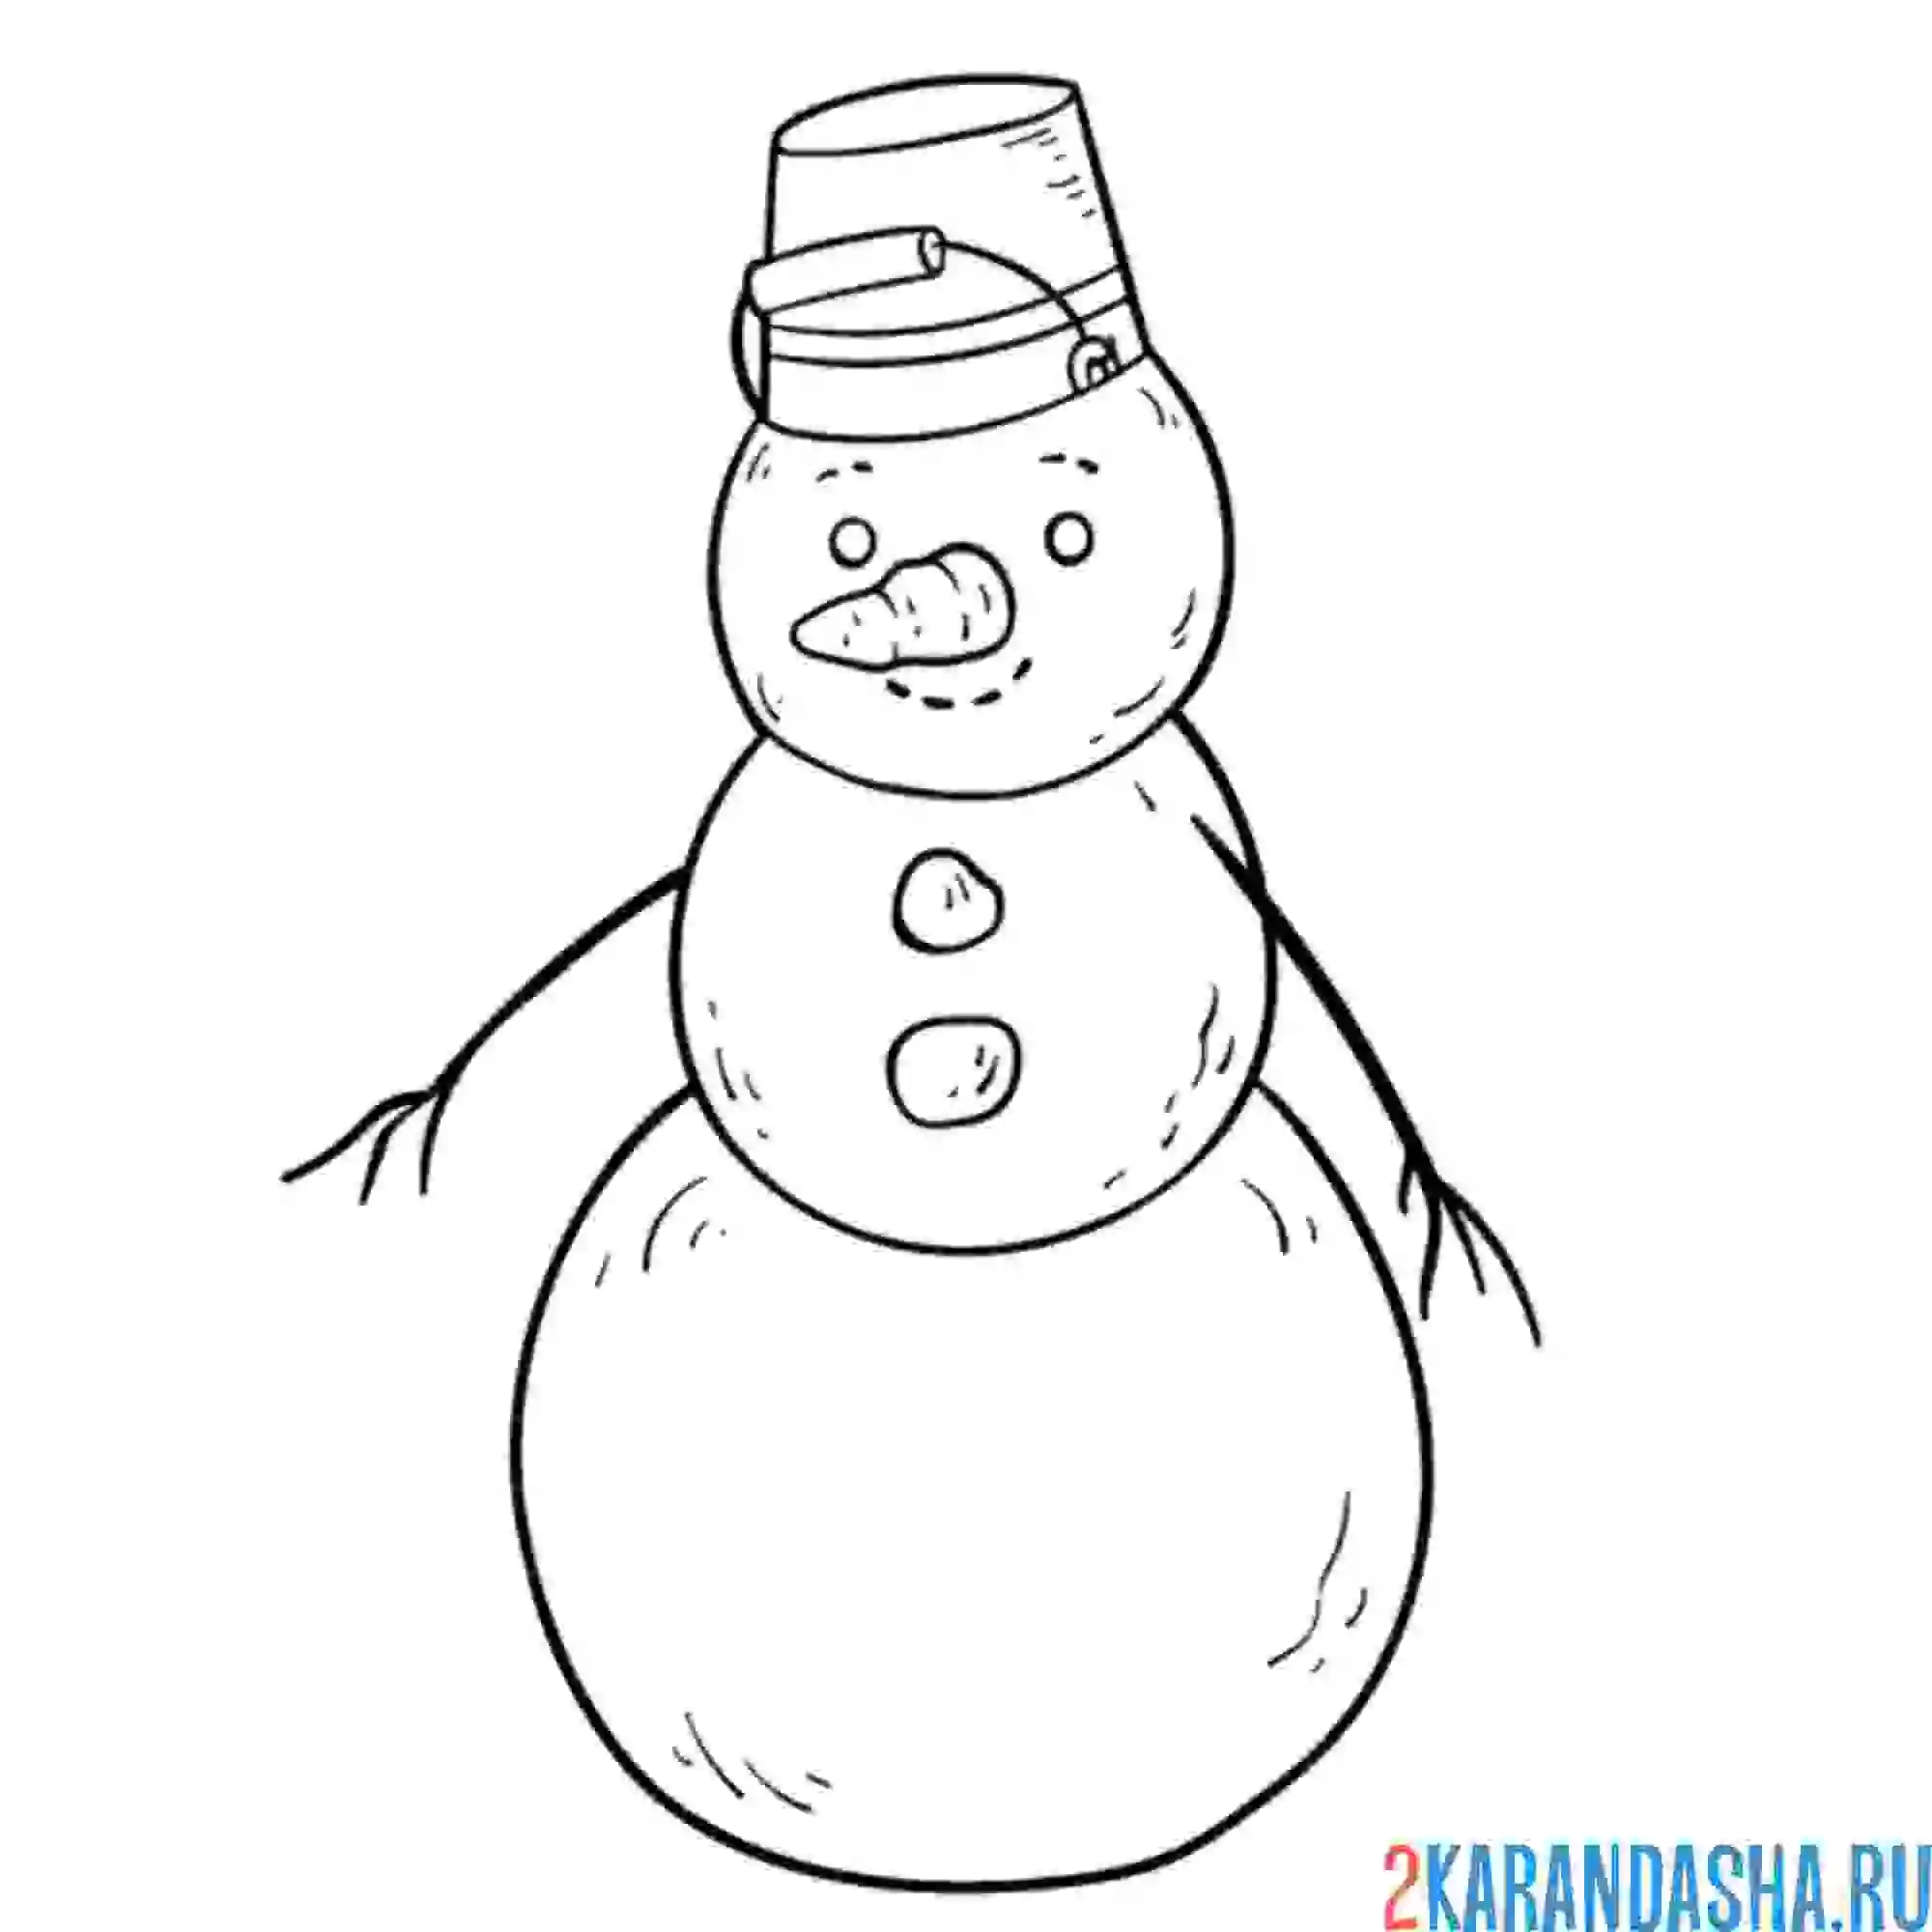 Раскраска снежный снеговик с ведром на голове